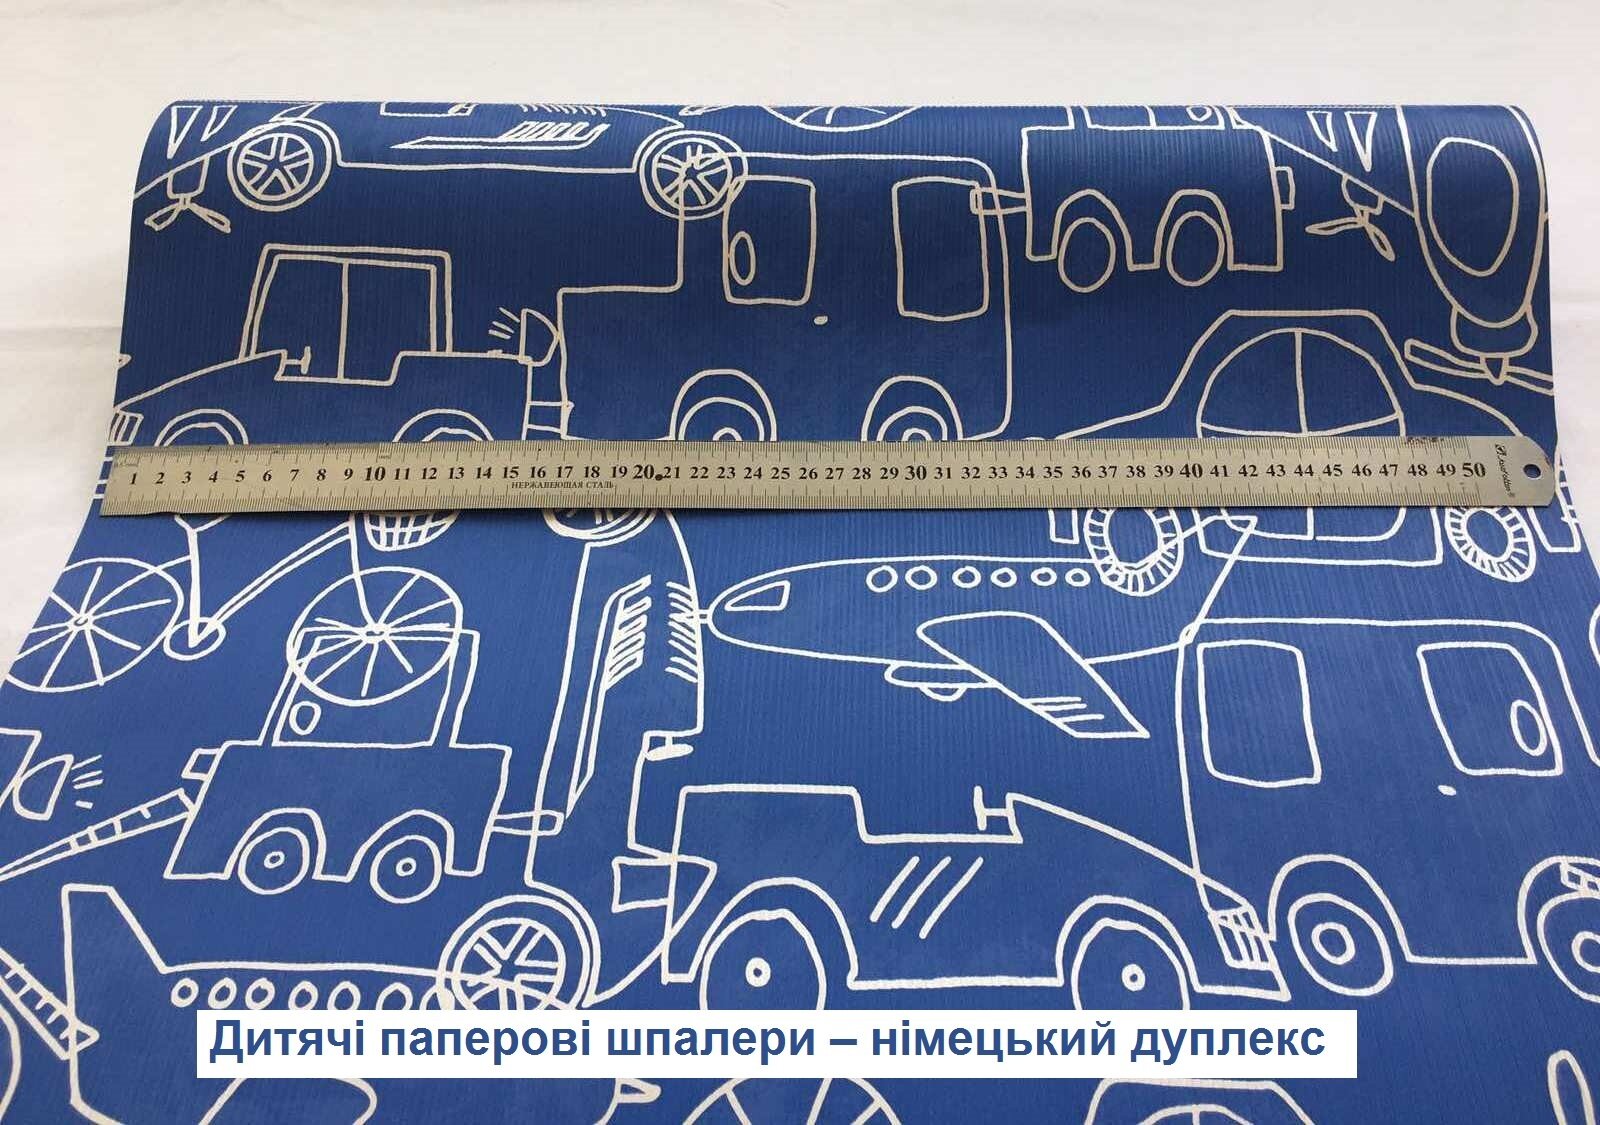 Сині паперові шпалери, для дитячої маленького хлопчика, з машинками літаками та технікою, екологічно чистий німецький дуплекс